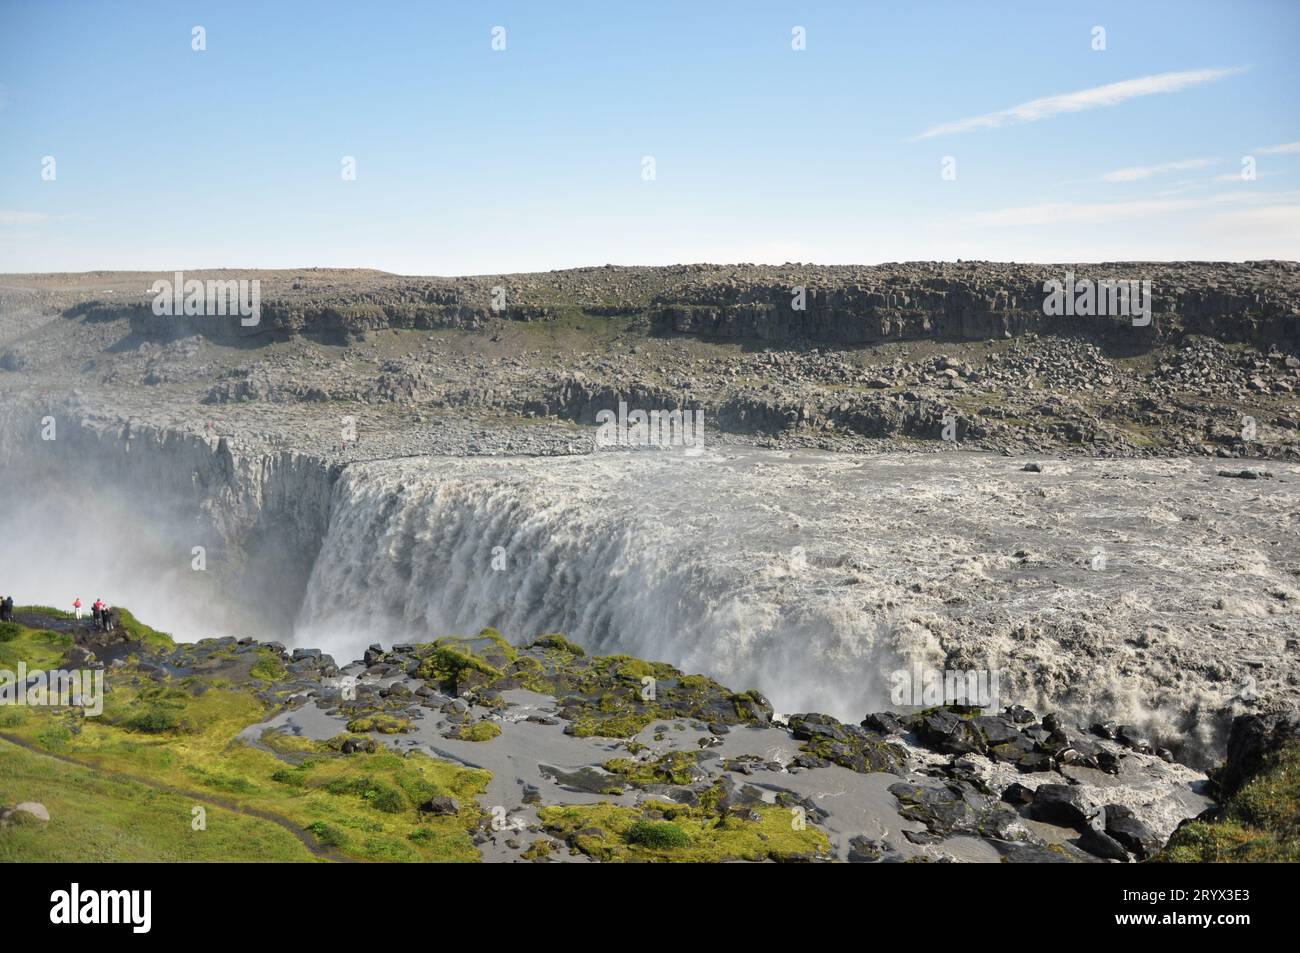 Fantastische isländische Landschaft am Dettifoss Wasserfall im Nordosten Islands. Dettifoss ist ein Wasserfall in Vatnajokull National P Stockfoto